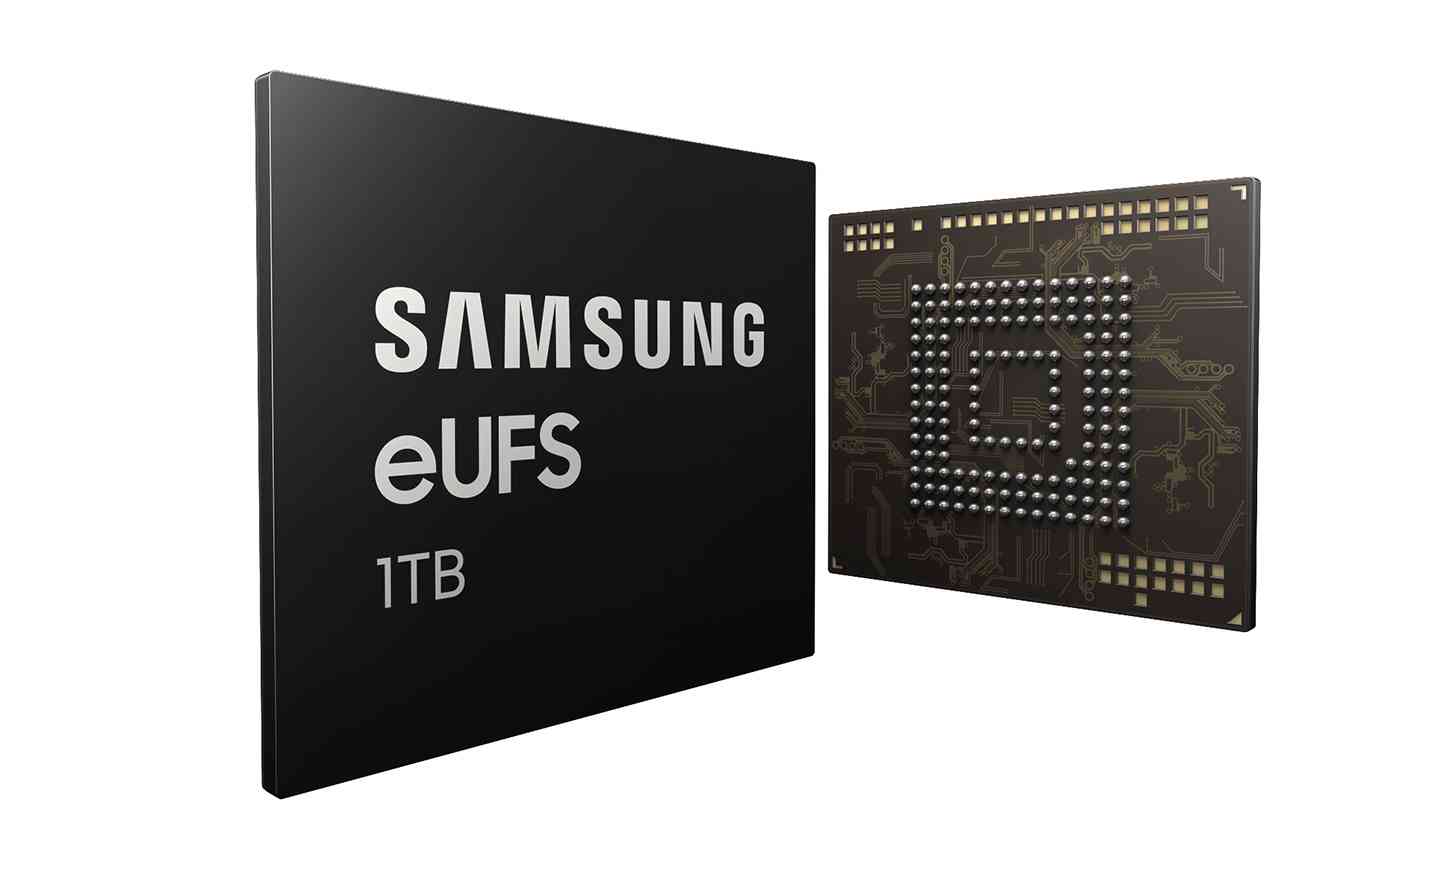 Samsung 1TB eUFS 2.1 storage smartphones